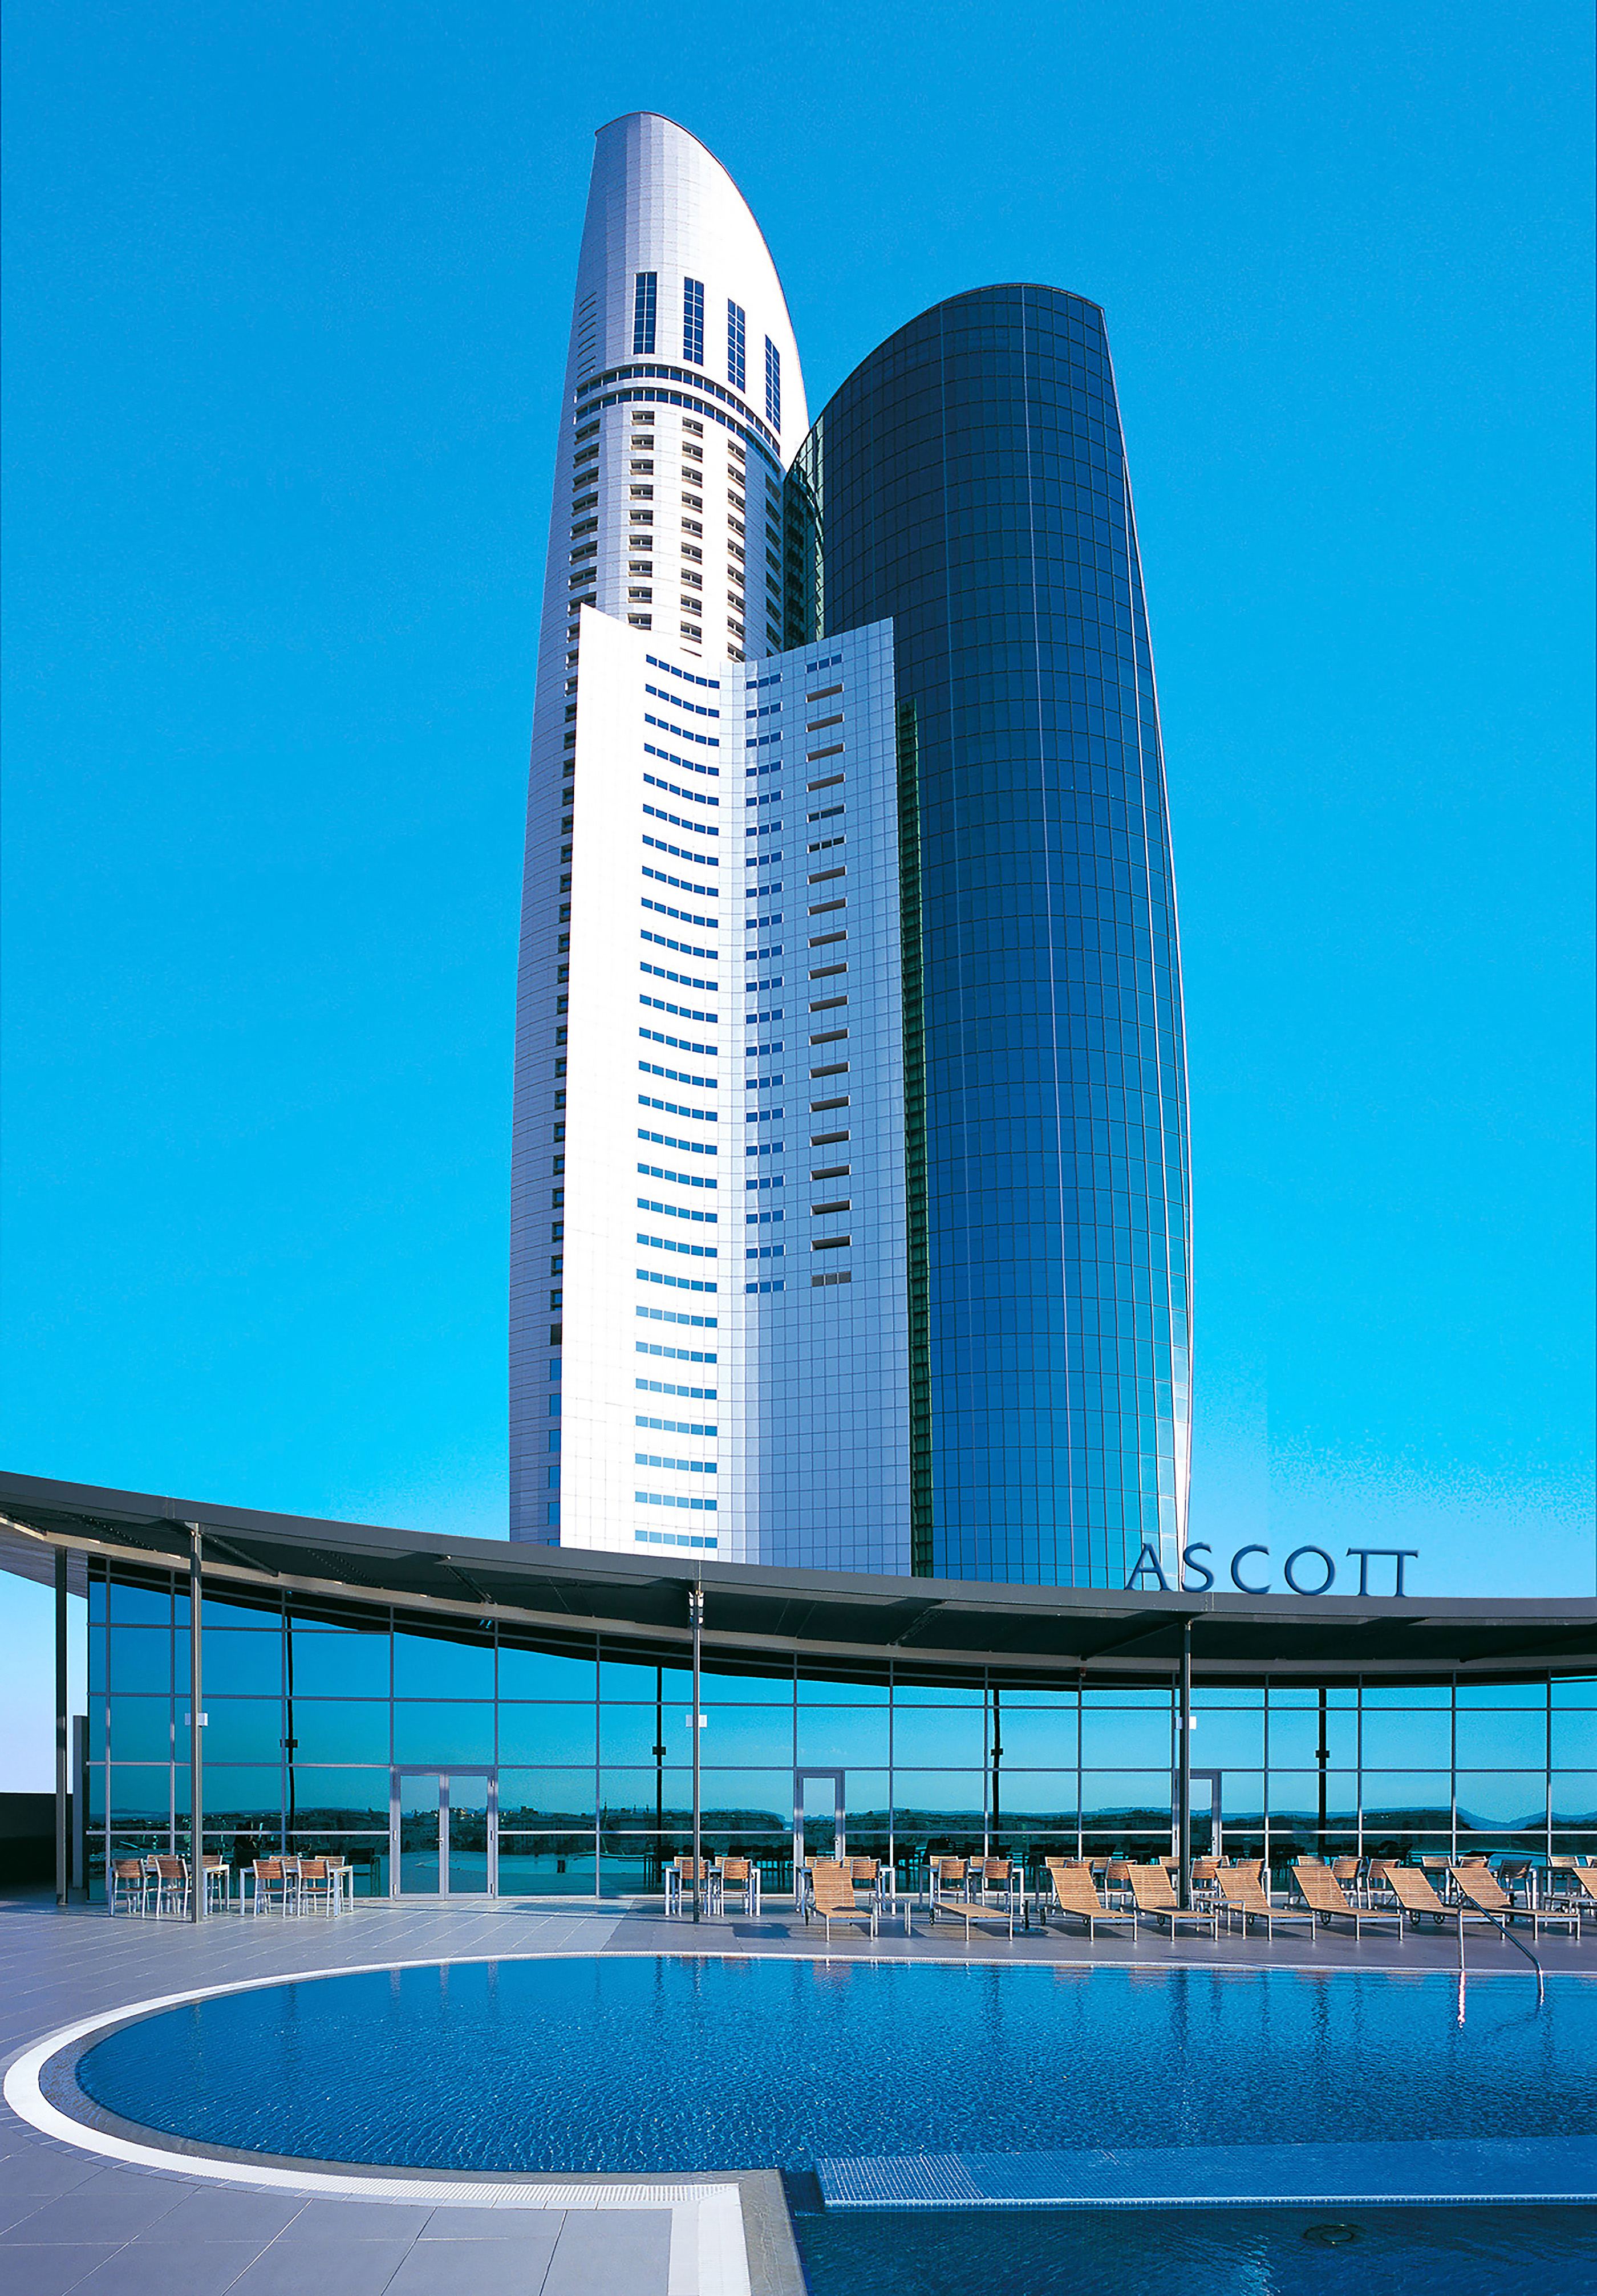 أسكوت ترحب بالضيوف في فنادقها في دبي للاحتفال باليوم الوطني الحادي والخمسين لدولة الإمارات العربية المتحدة